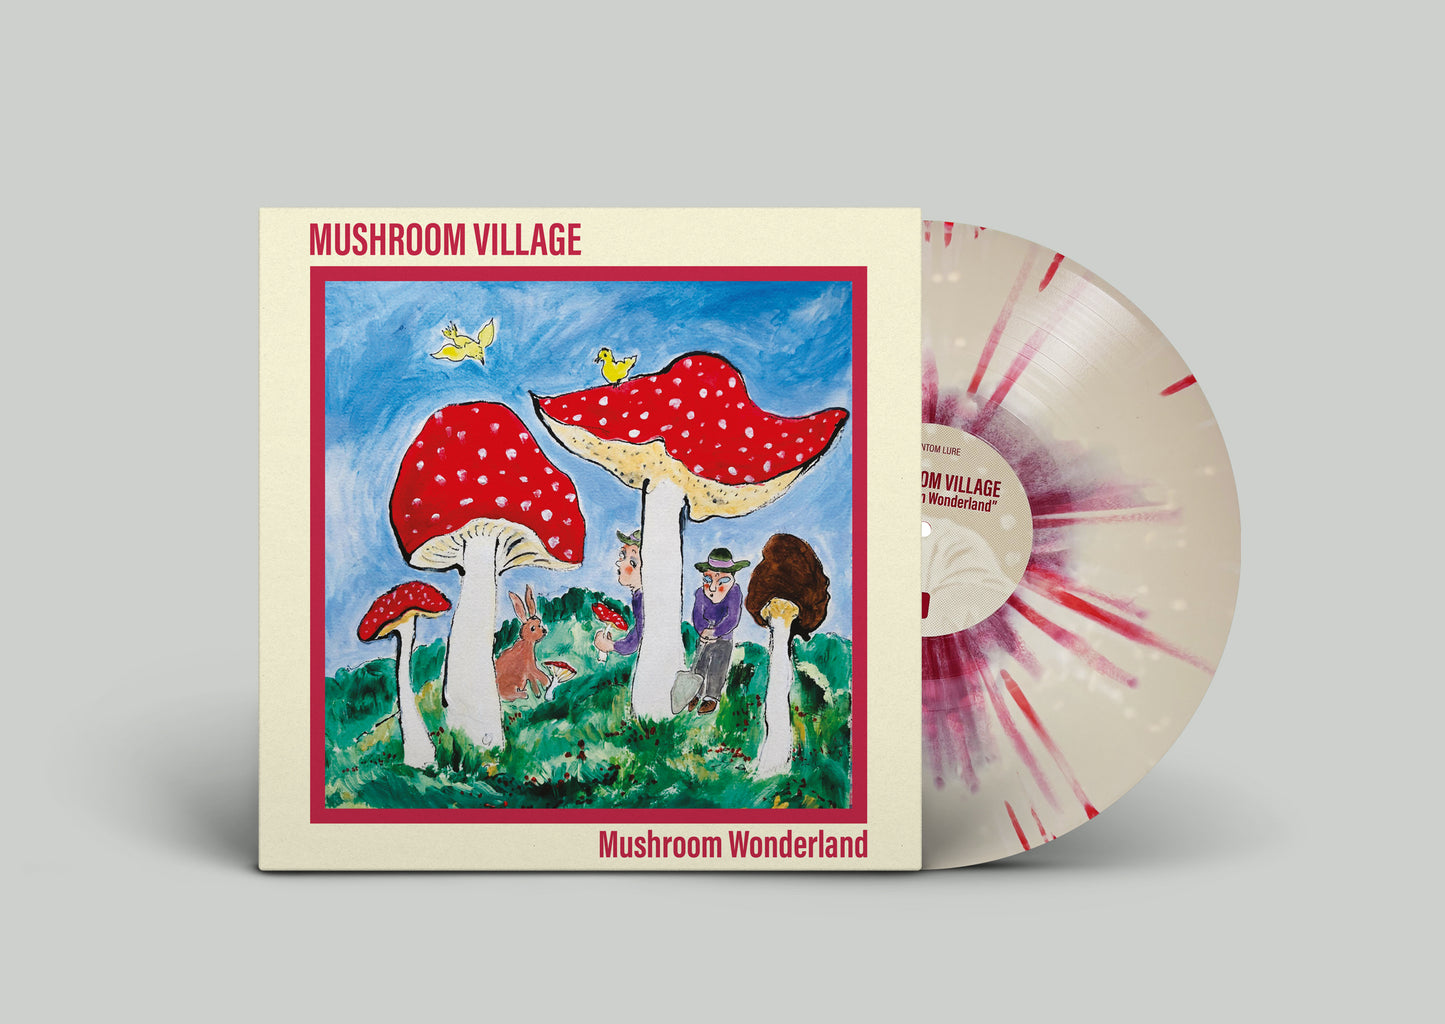 MUSHROOM VILLAGE - Mushroom Wonderland LP